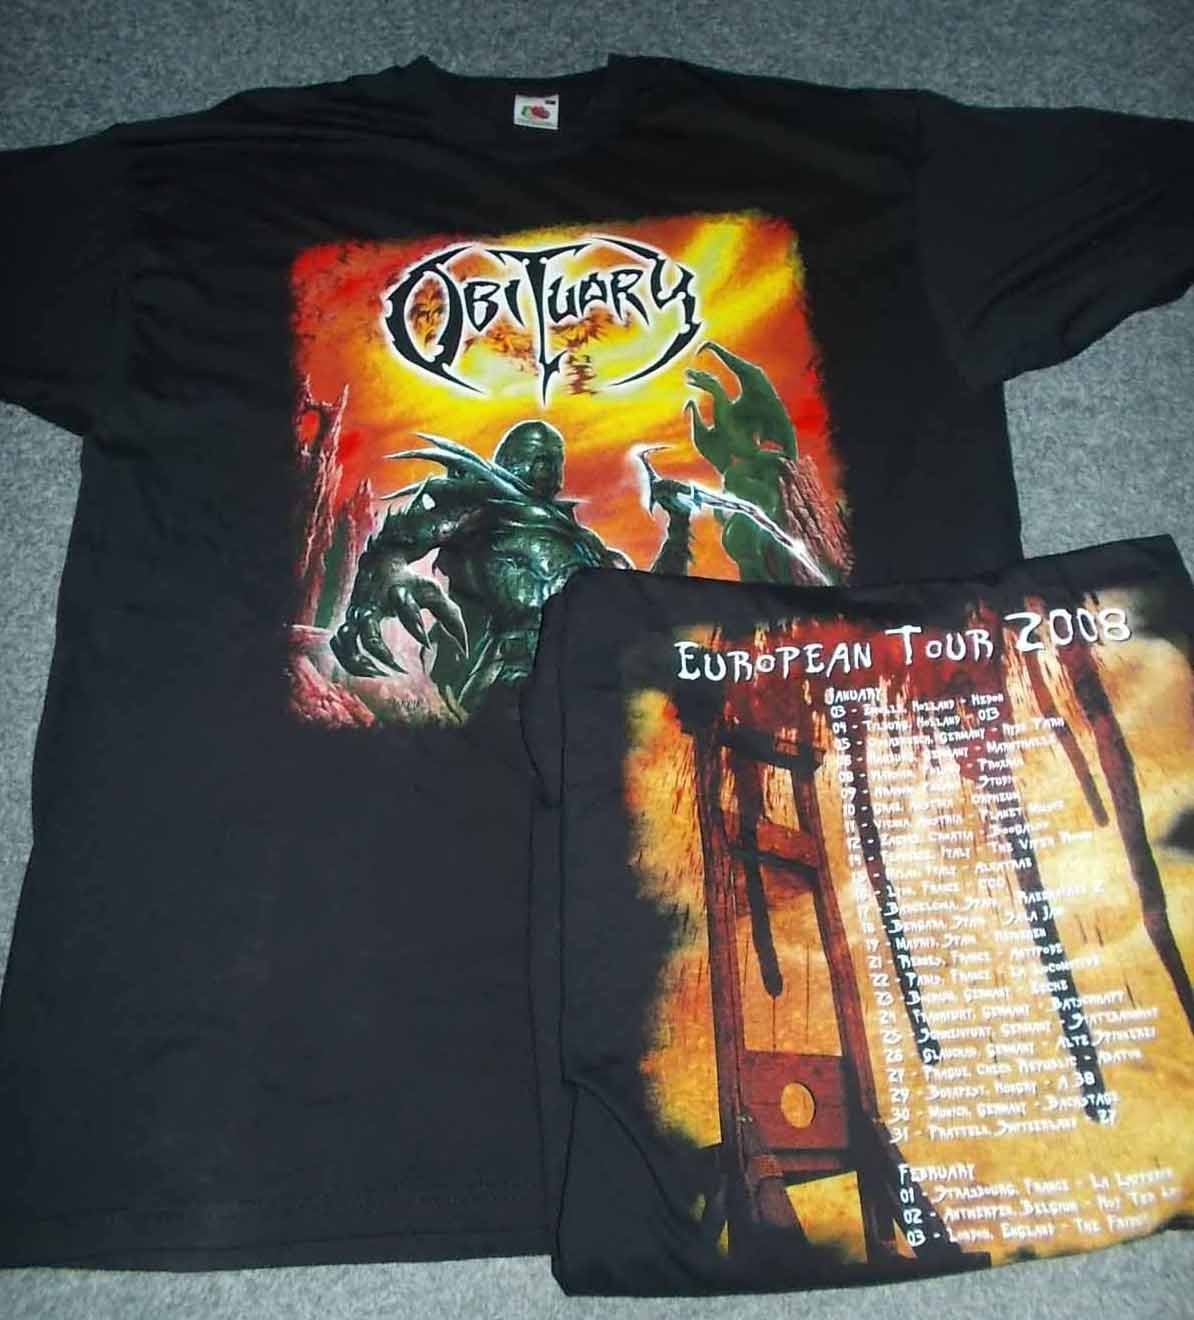 Obituary - Tour 2008 - XL